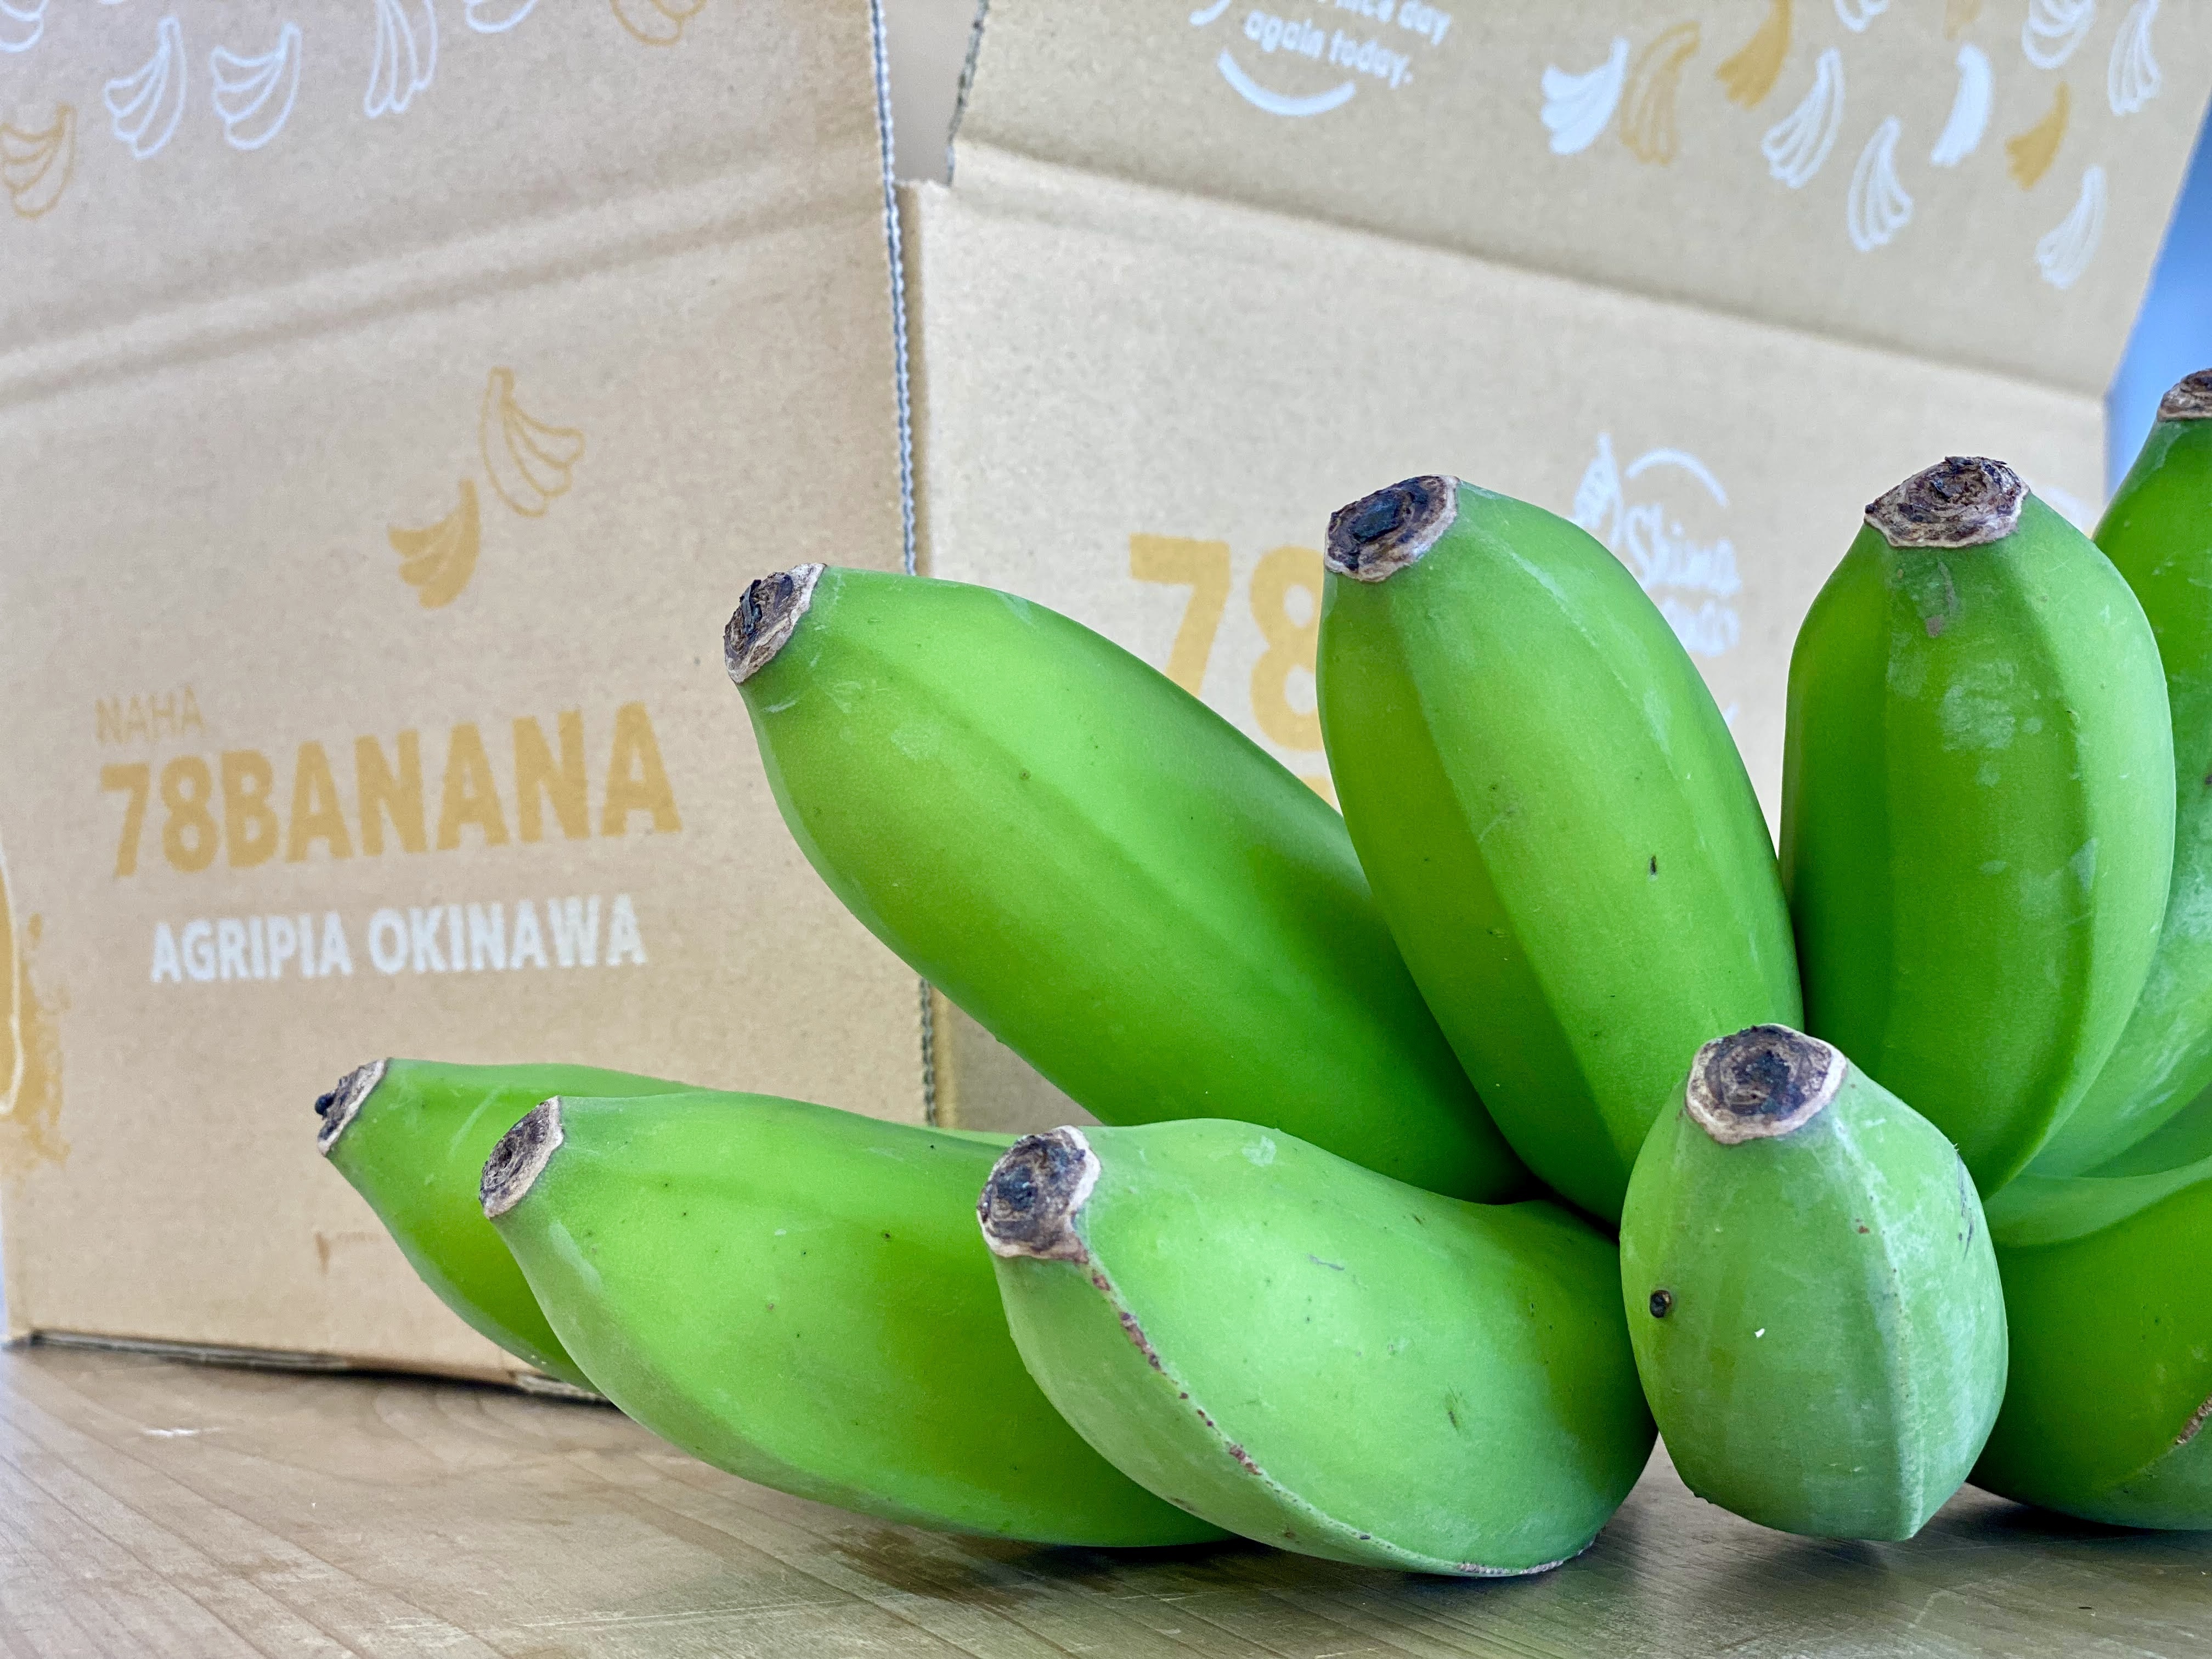 最高の品質の 送料無料 沖縄県産バナナの葉 大サイズ 5枚